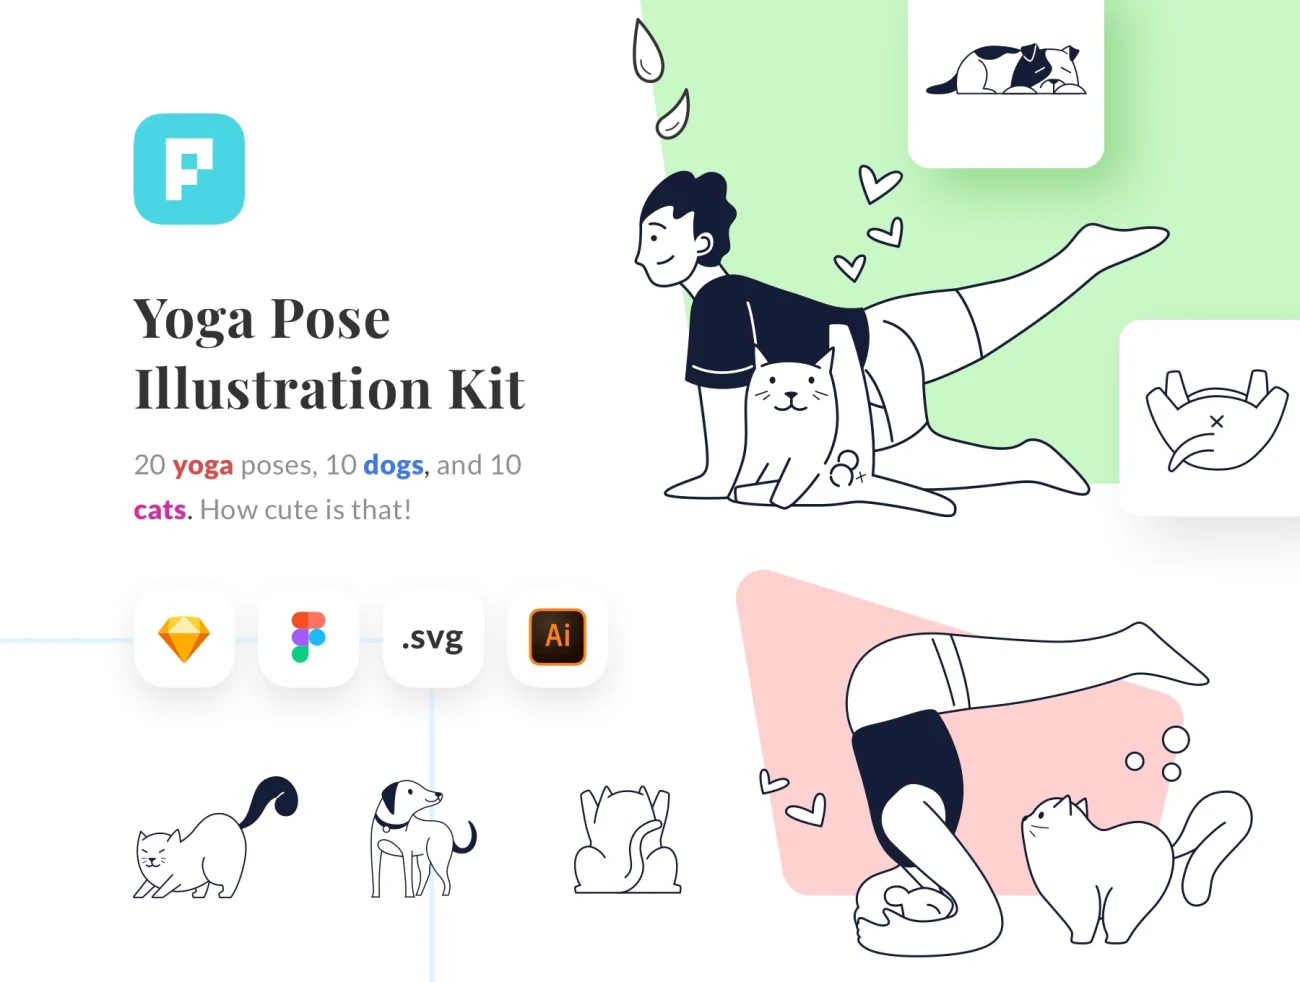 10场景瑜伽矢量插画素材合集 Yoga Pose Illustration Kit-人物插画、场景插画、学习生活、插画、插画风格、概念创意、线条手绘、趣味漫画-到位啦UI